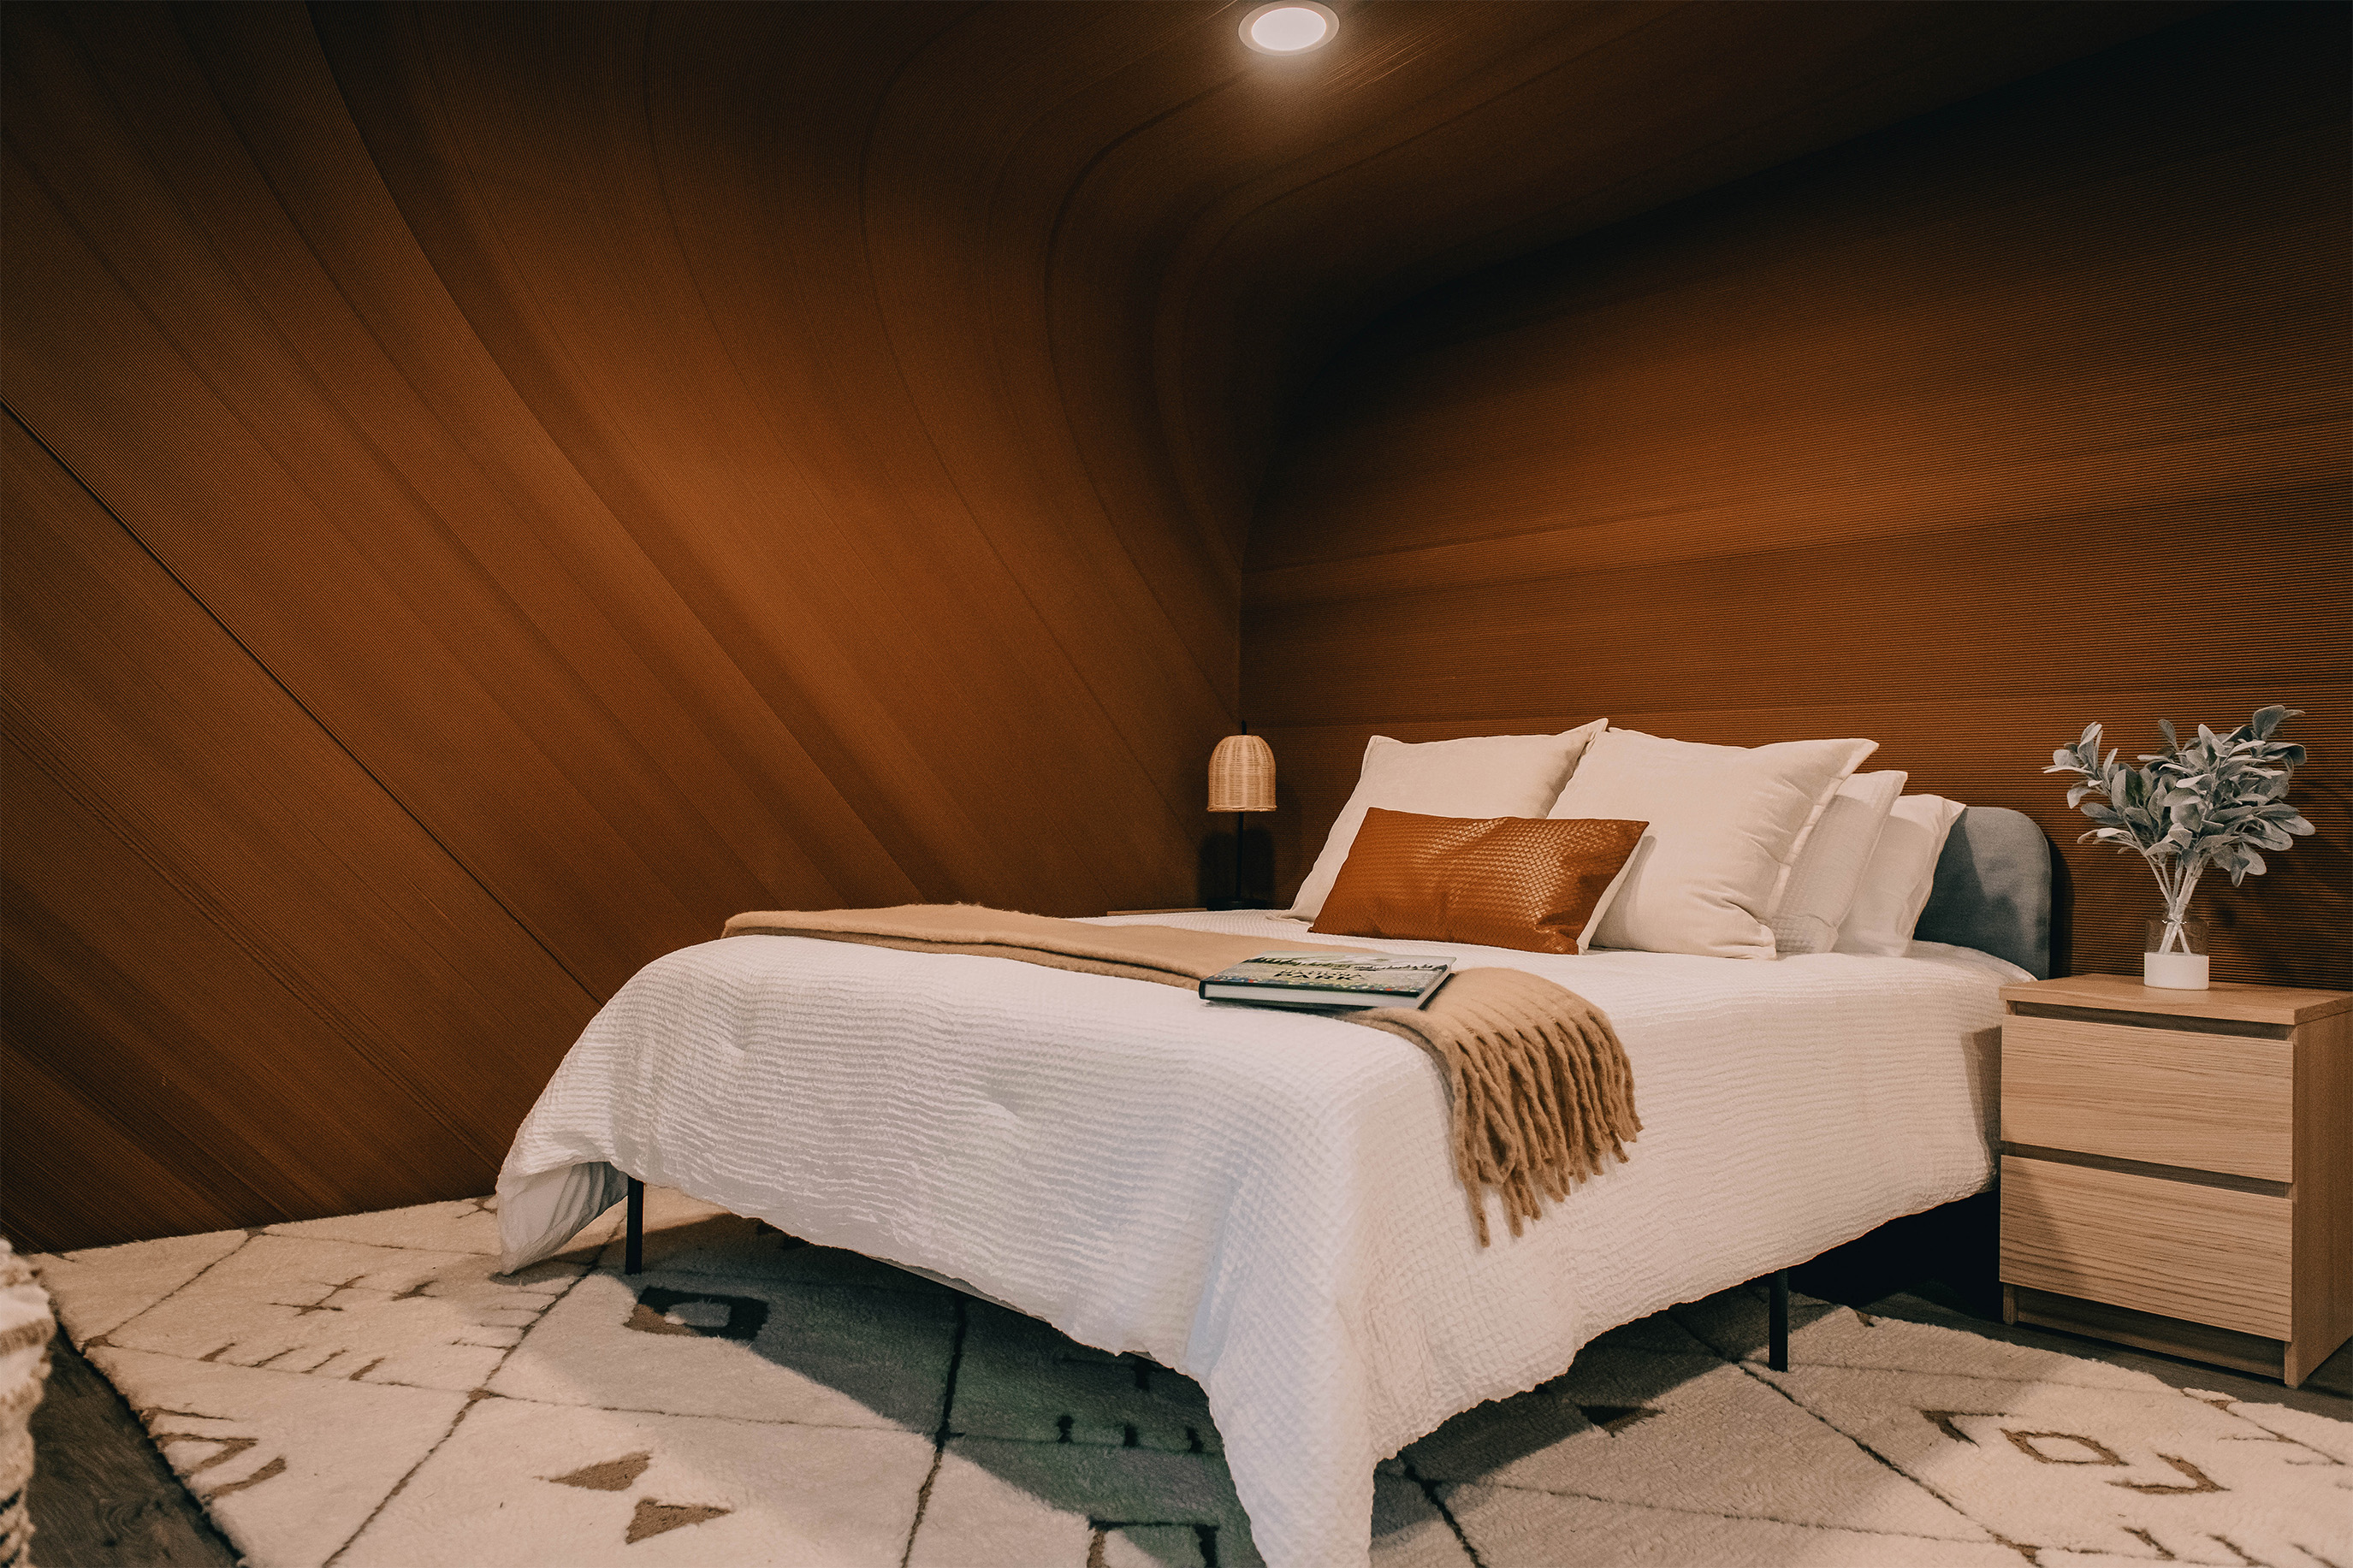 Bedroom in 3D-printed wood home